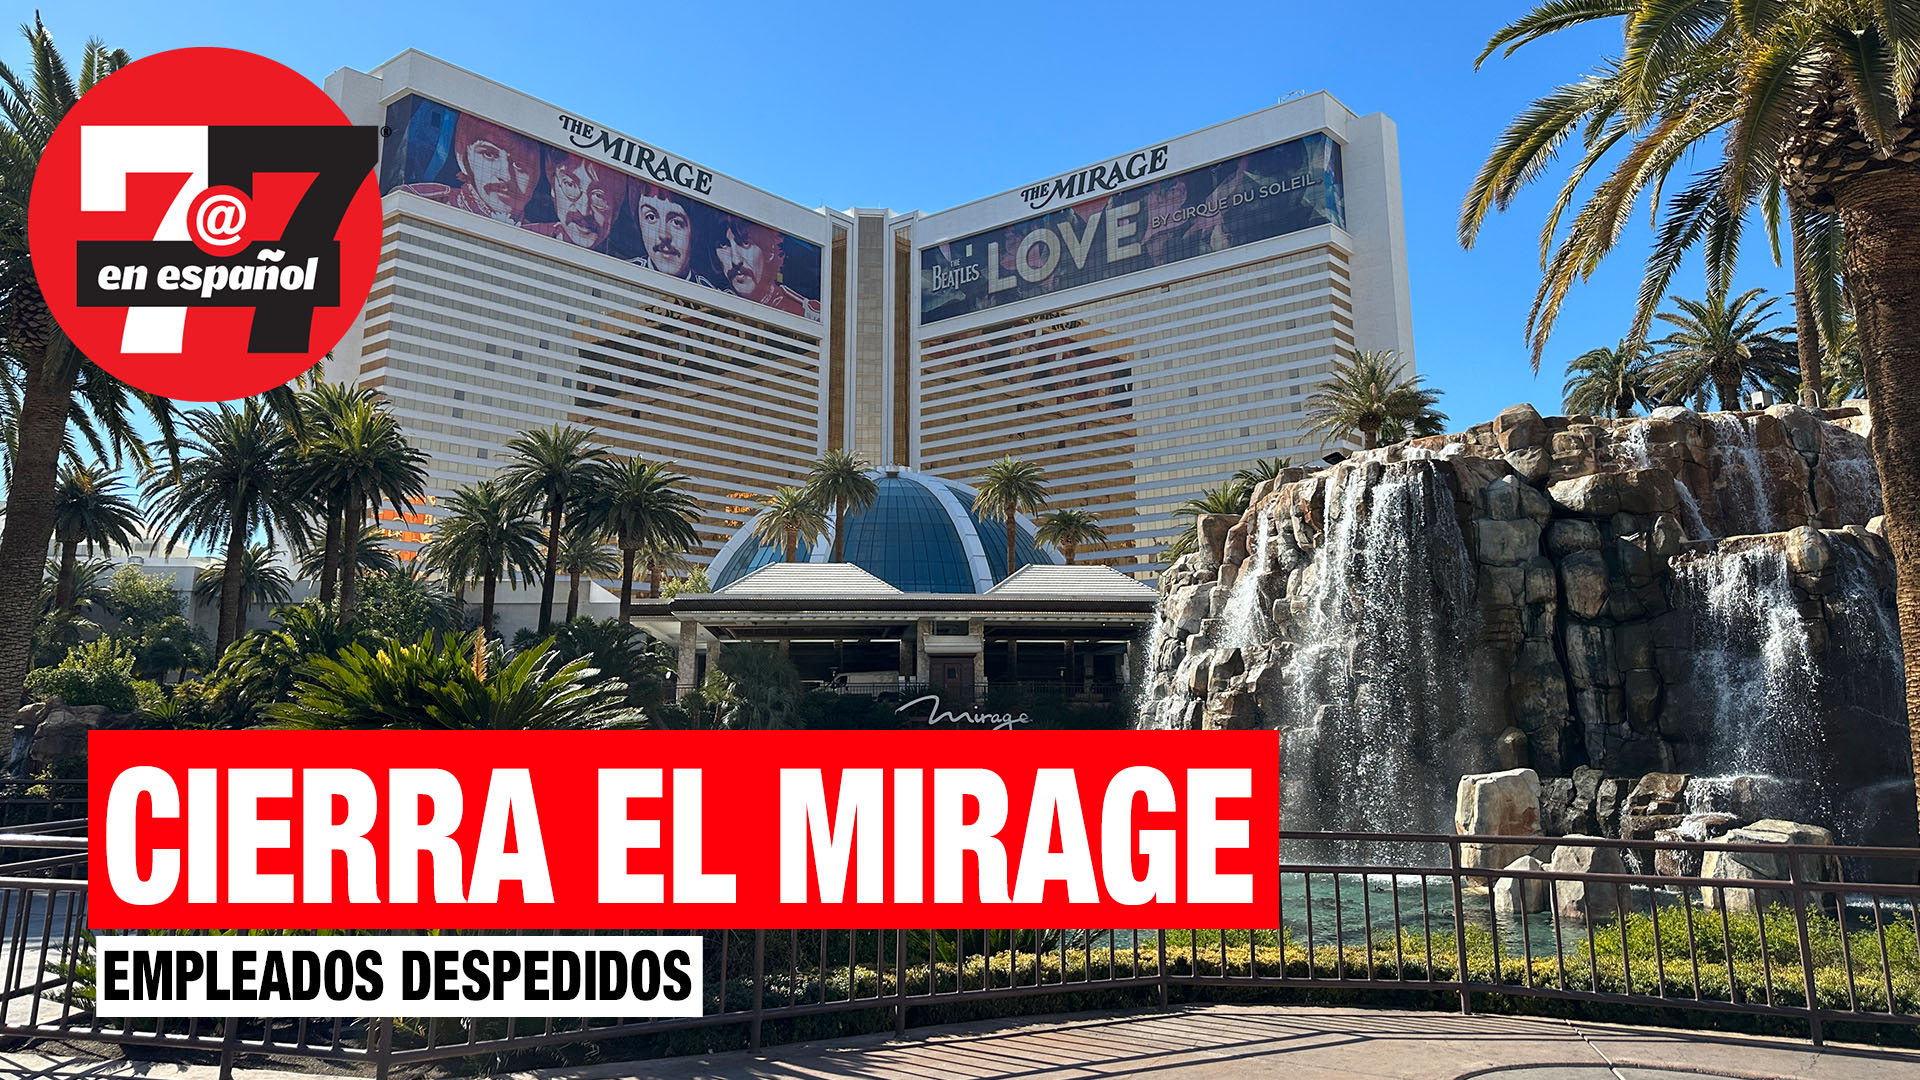 Noticias de Las Vegas | Icónico hotel y casino Mirage cerrará y miles serán despedidos